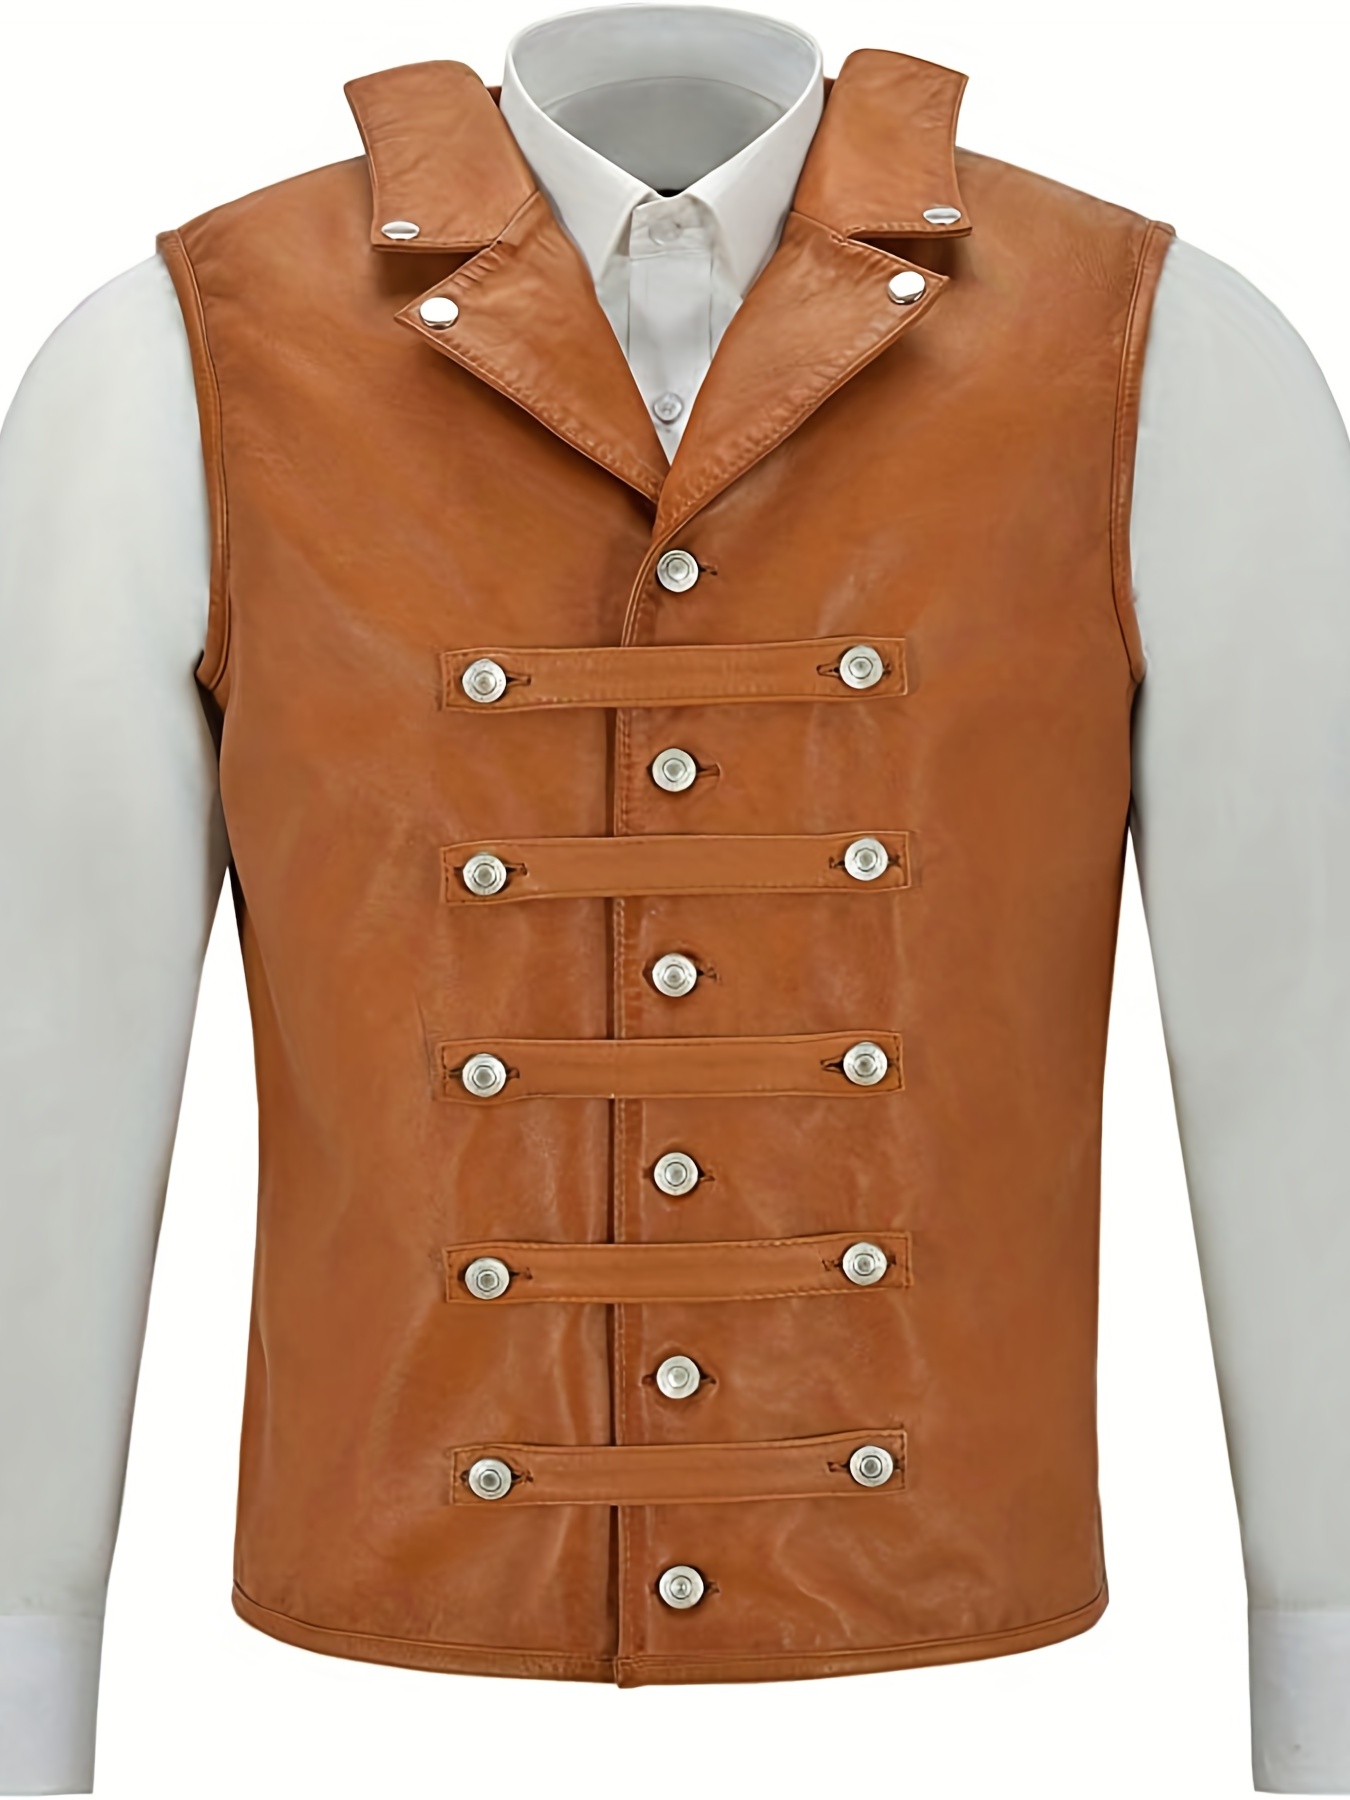 Medieval leather vest